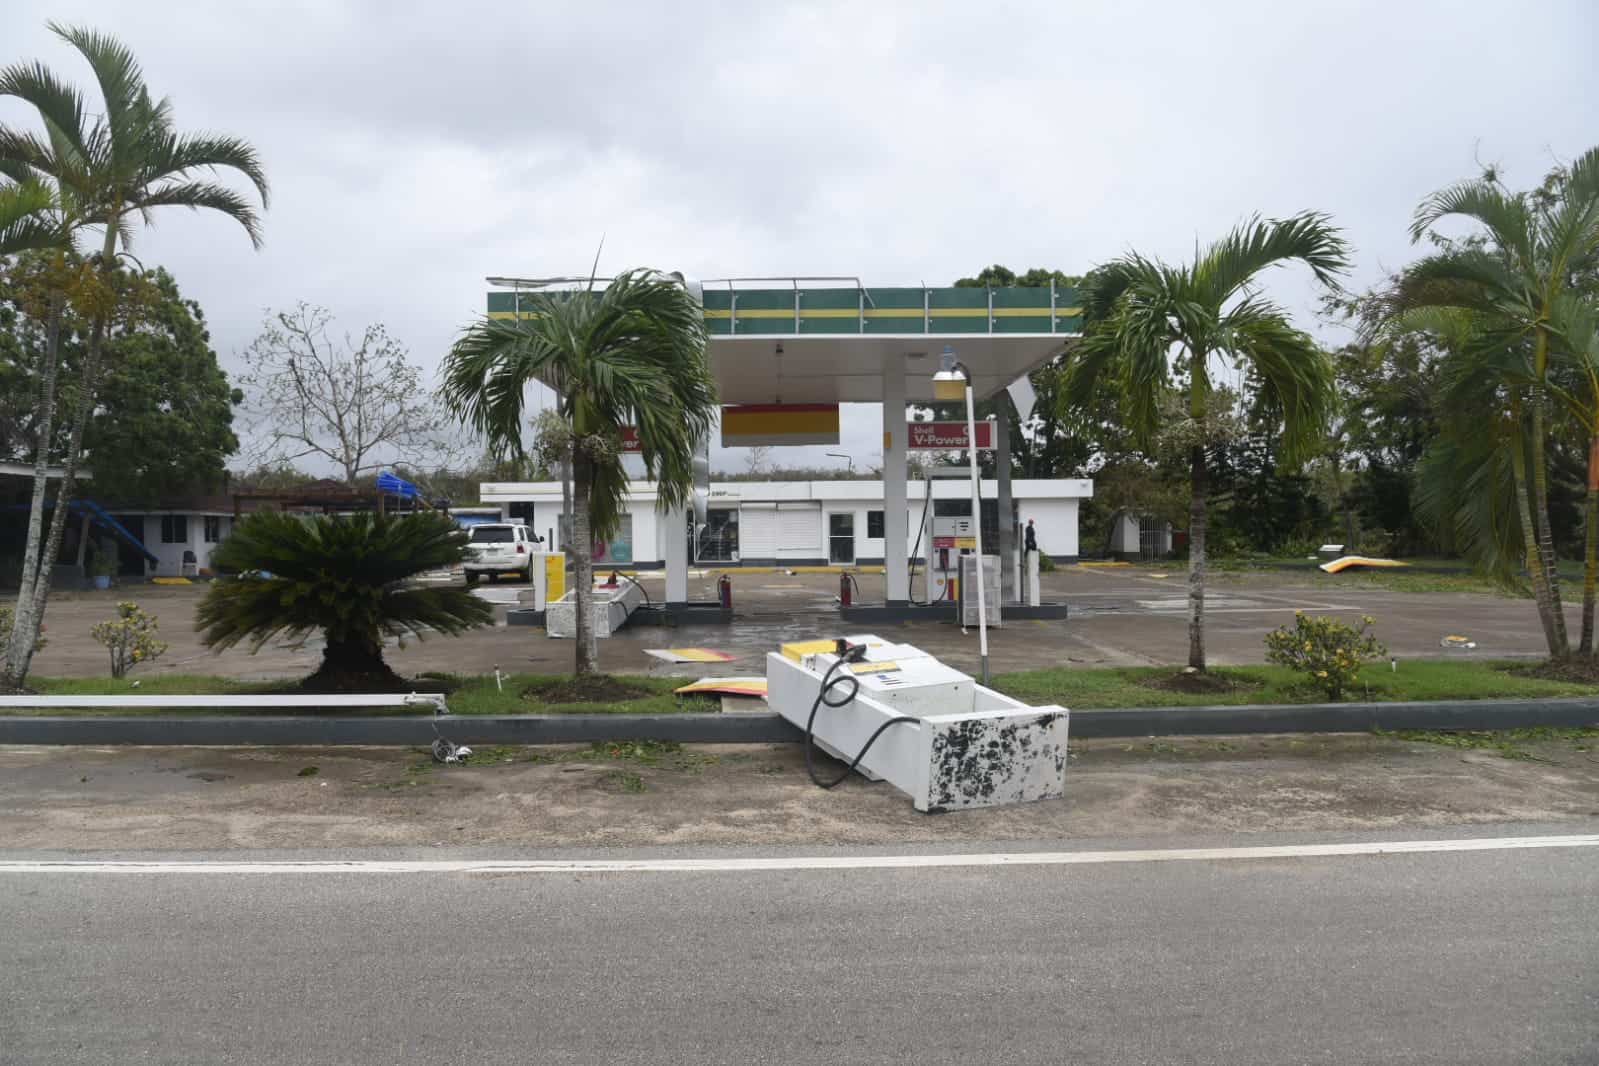 Un surtidor de gasolina fue arrancado de su pedestal en una estación de servicio en Boca de Yuma.